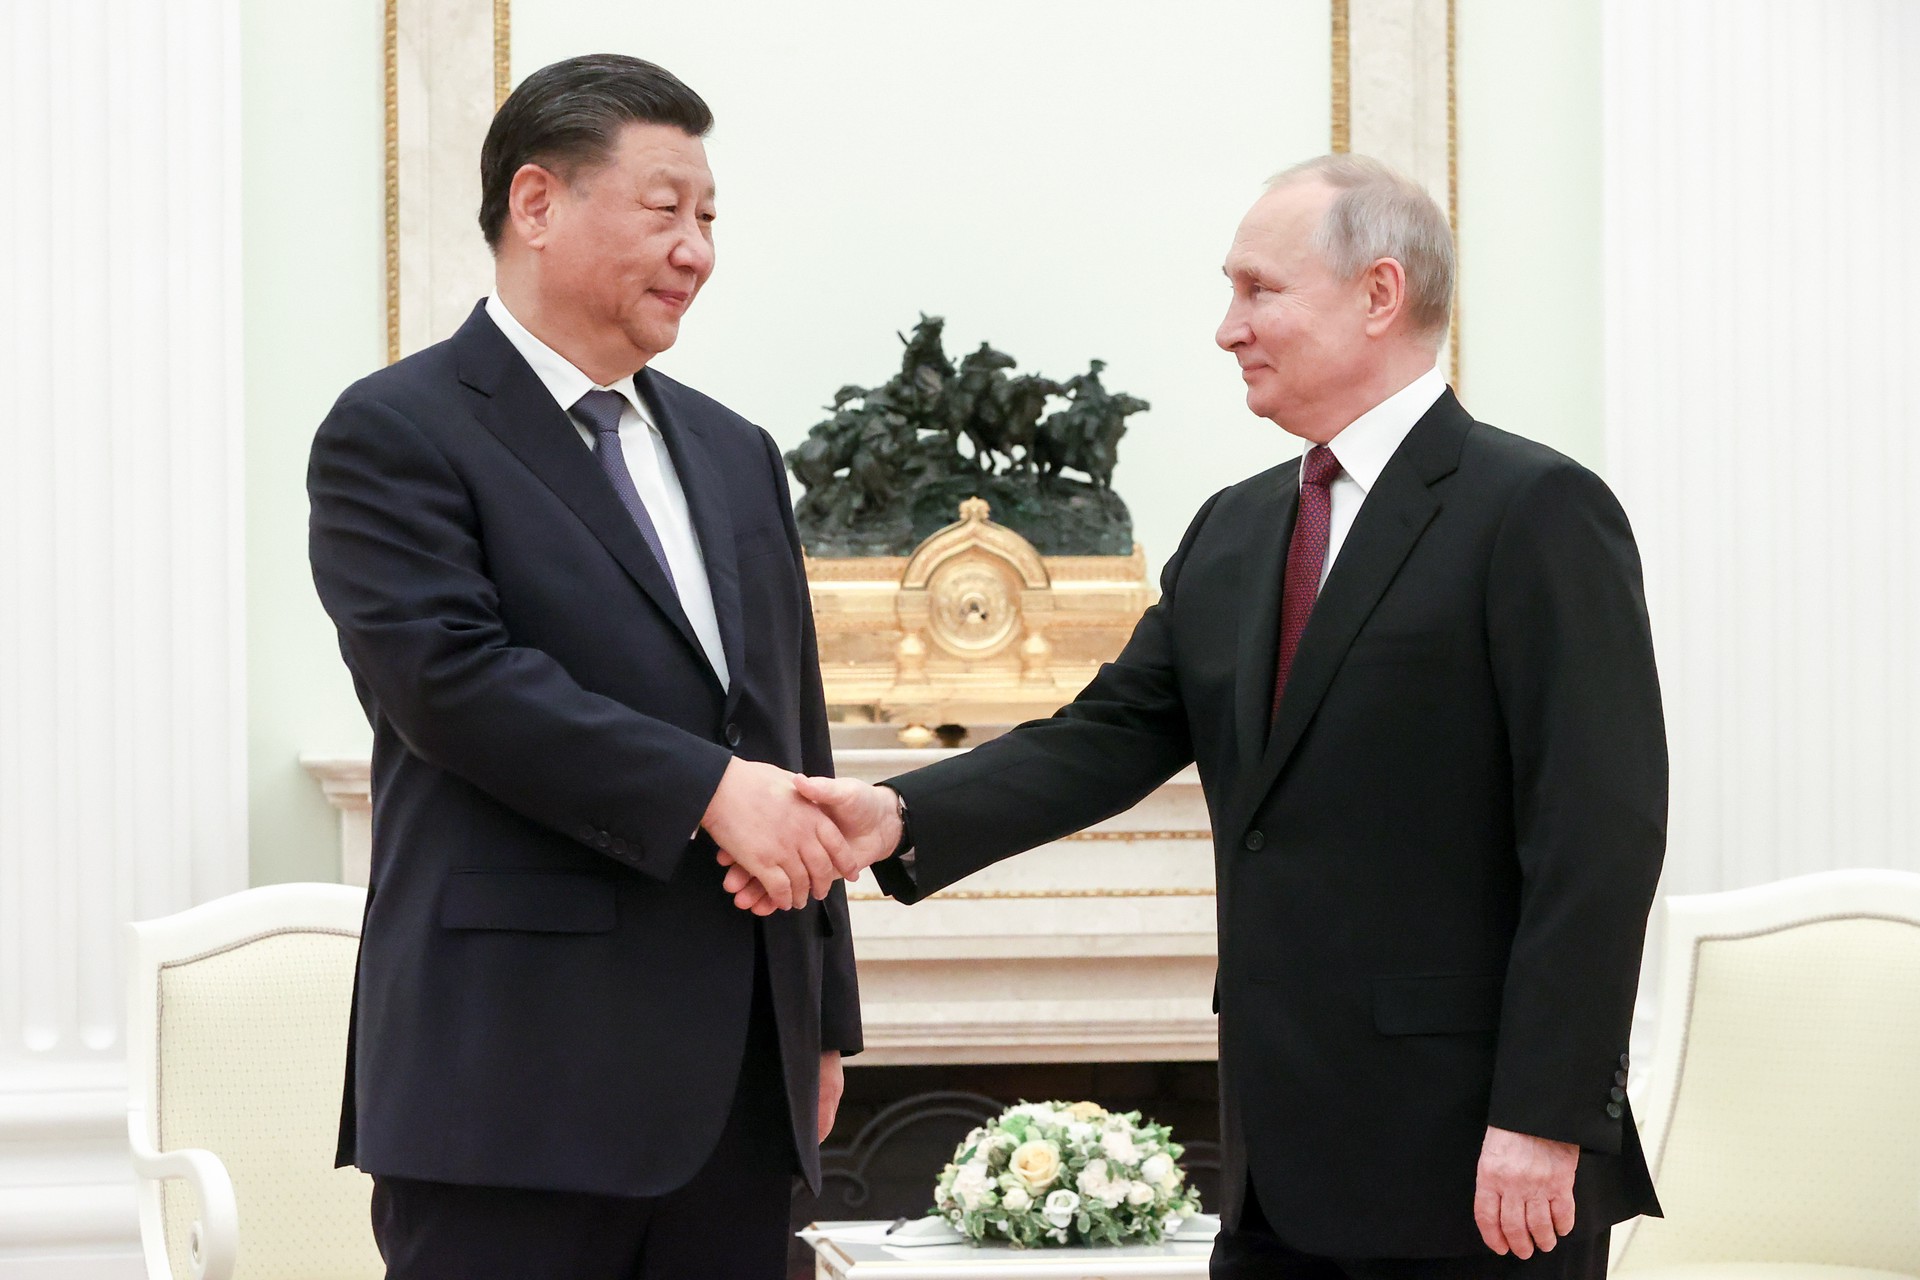 Си Цзиньпин поздравил Путина с победой на президентских выборах